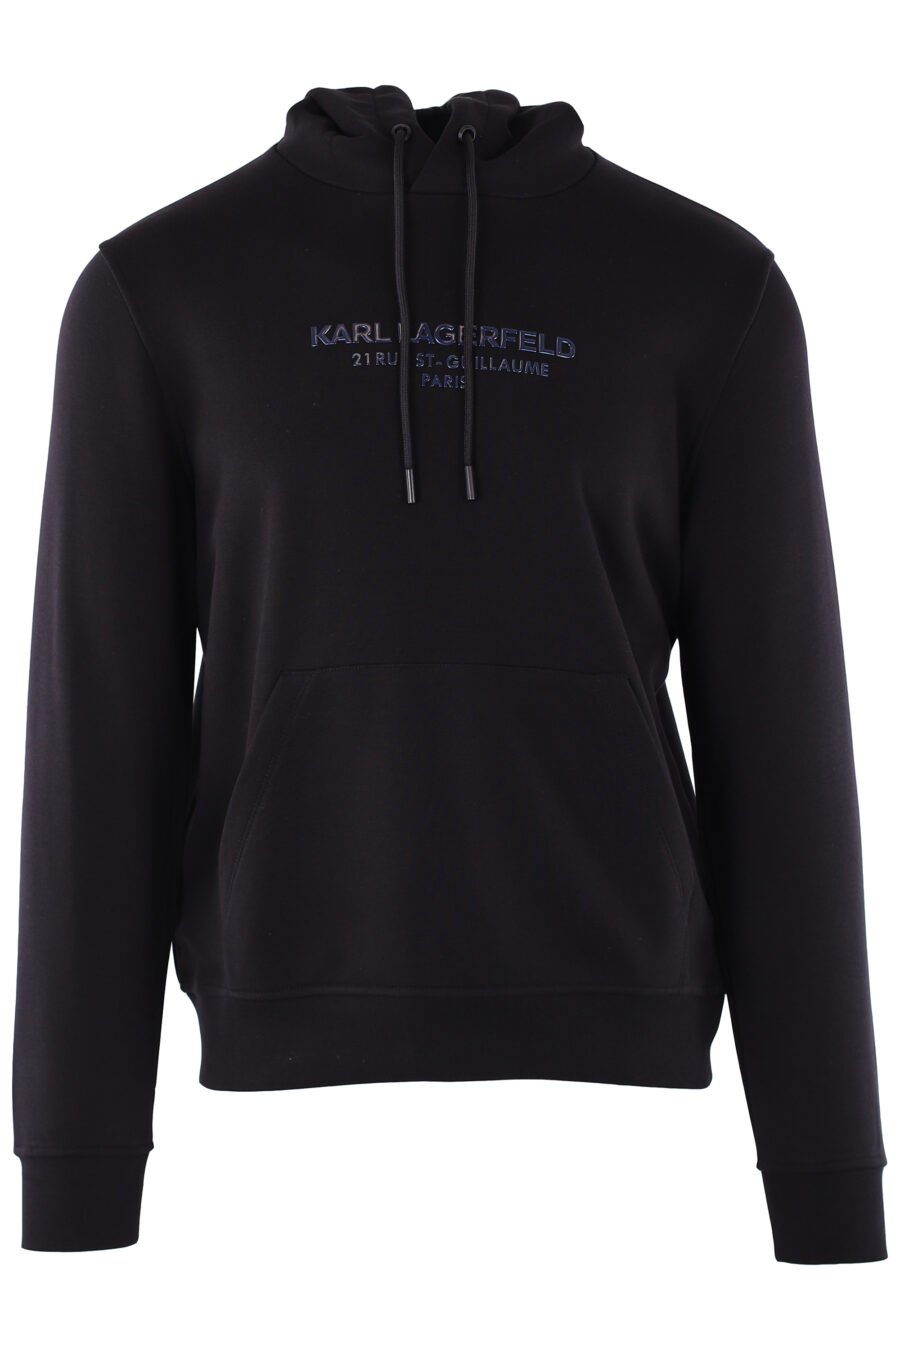 Schwarzes Sweatshirt mit Kapuze und blauem Metallic-Logo "rue st guillaume paris" - IMG 6406